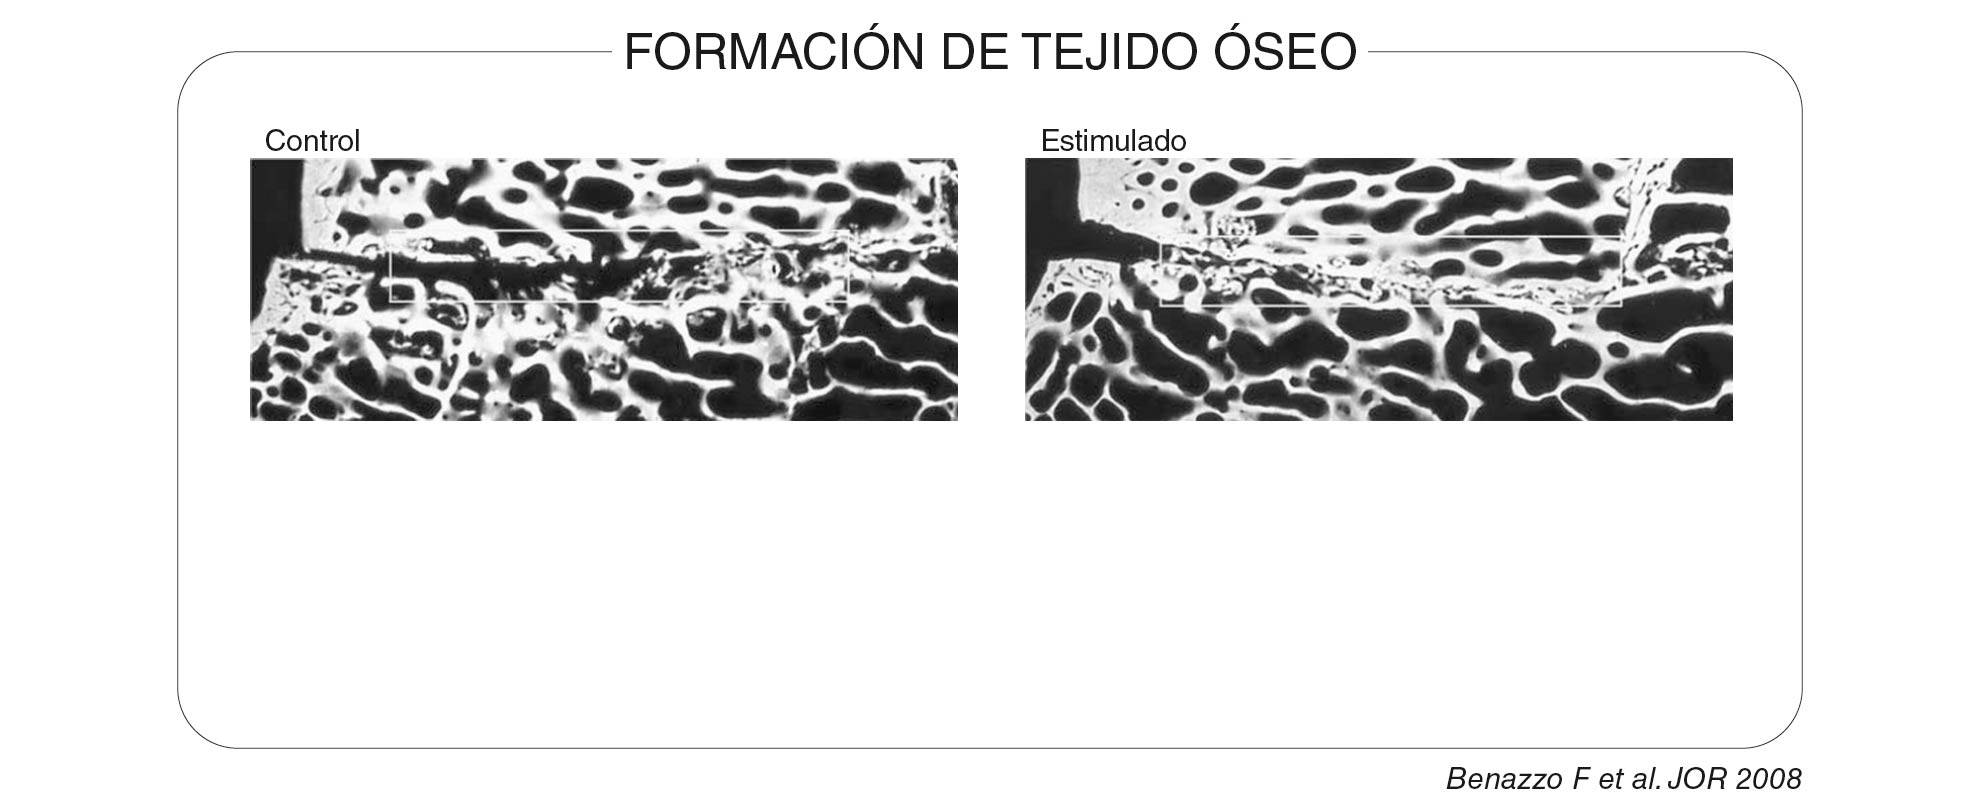 Formacion_de_ejido-oseo_1